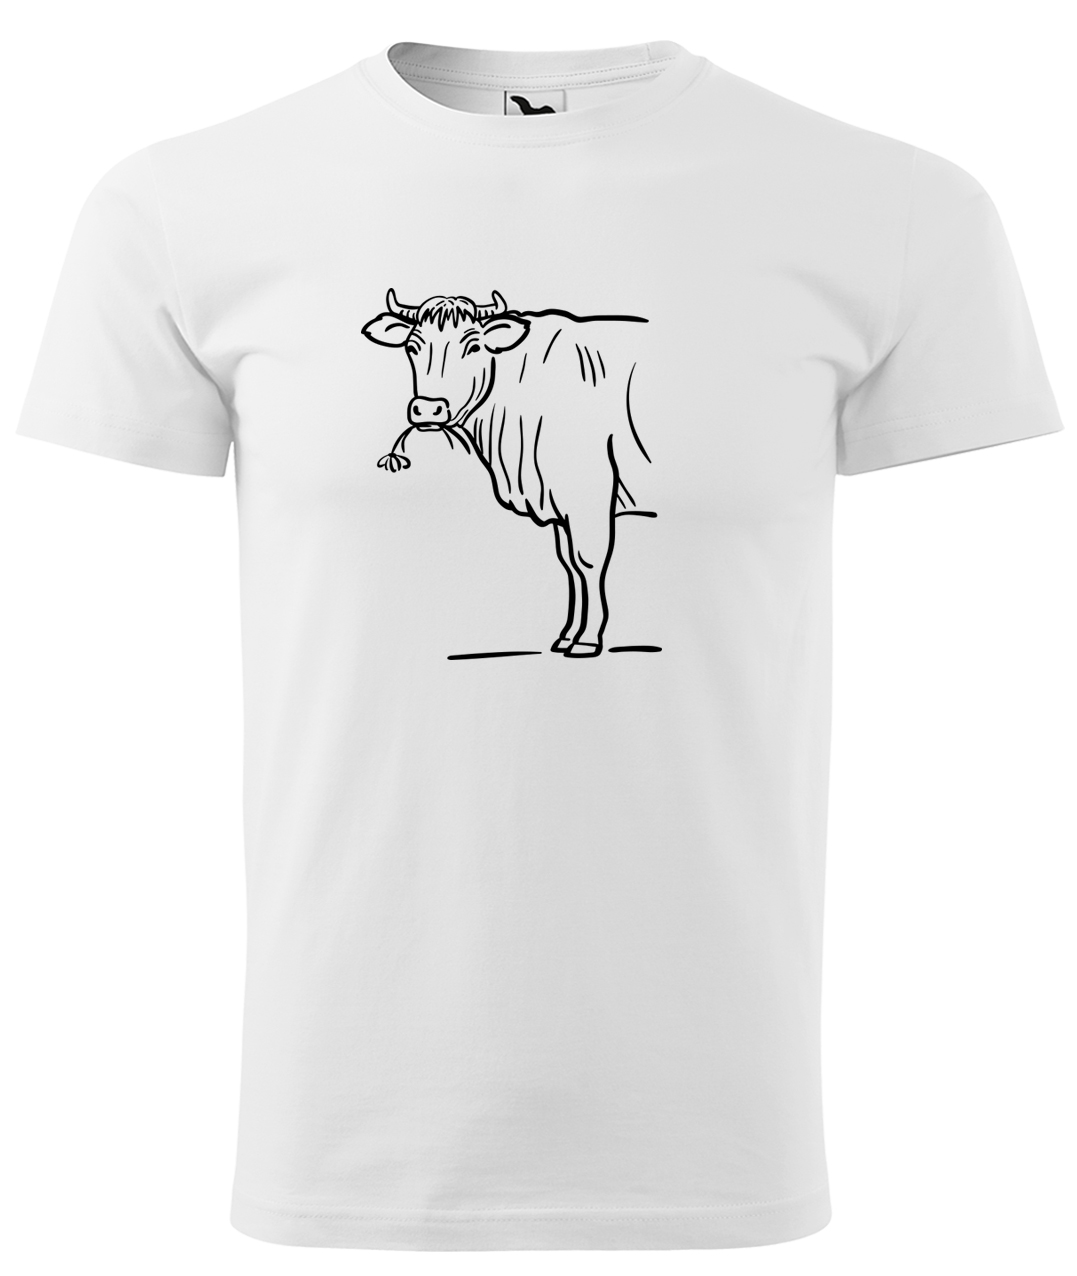 Dětské tričko s krávou - Býk Velikost: 4 roky / 110 cm, Barva: Bílá (00), Délka rukávu: Krátký rukáv